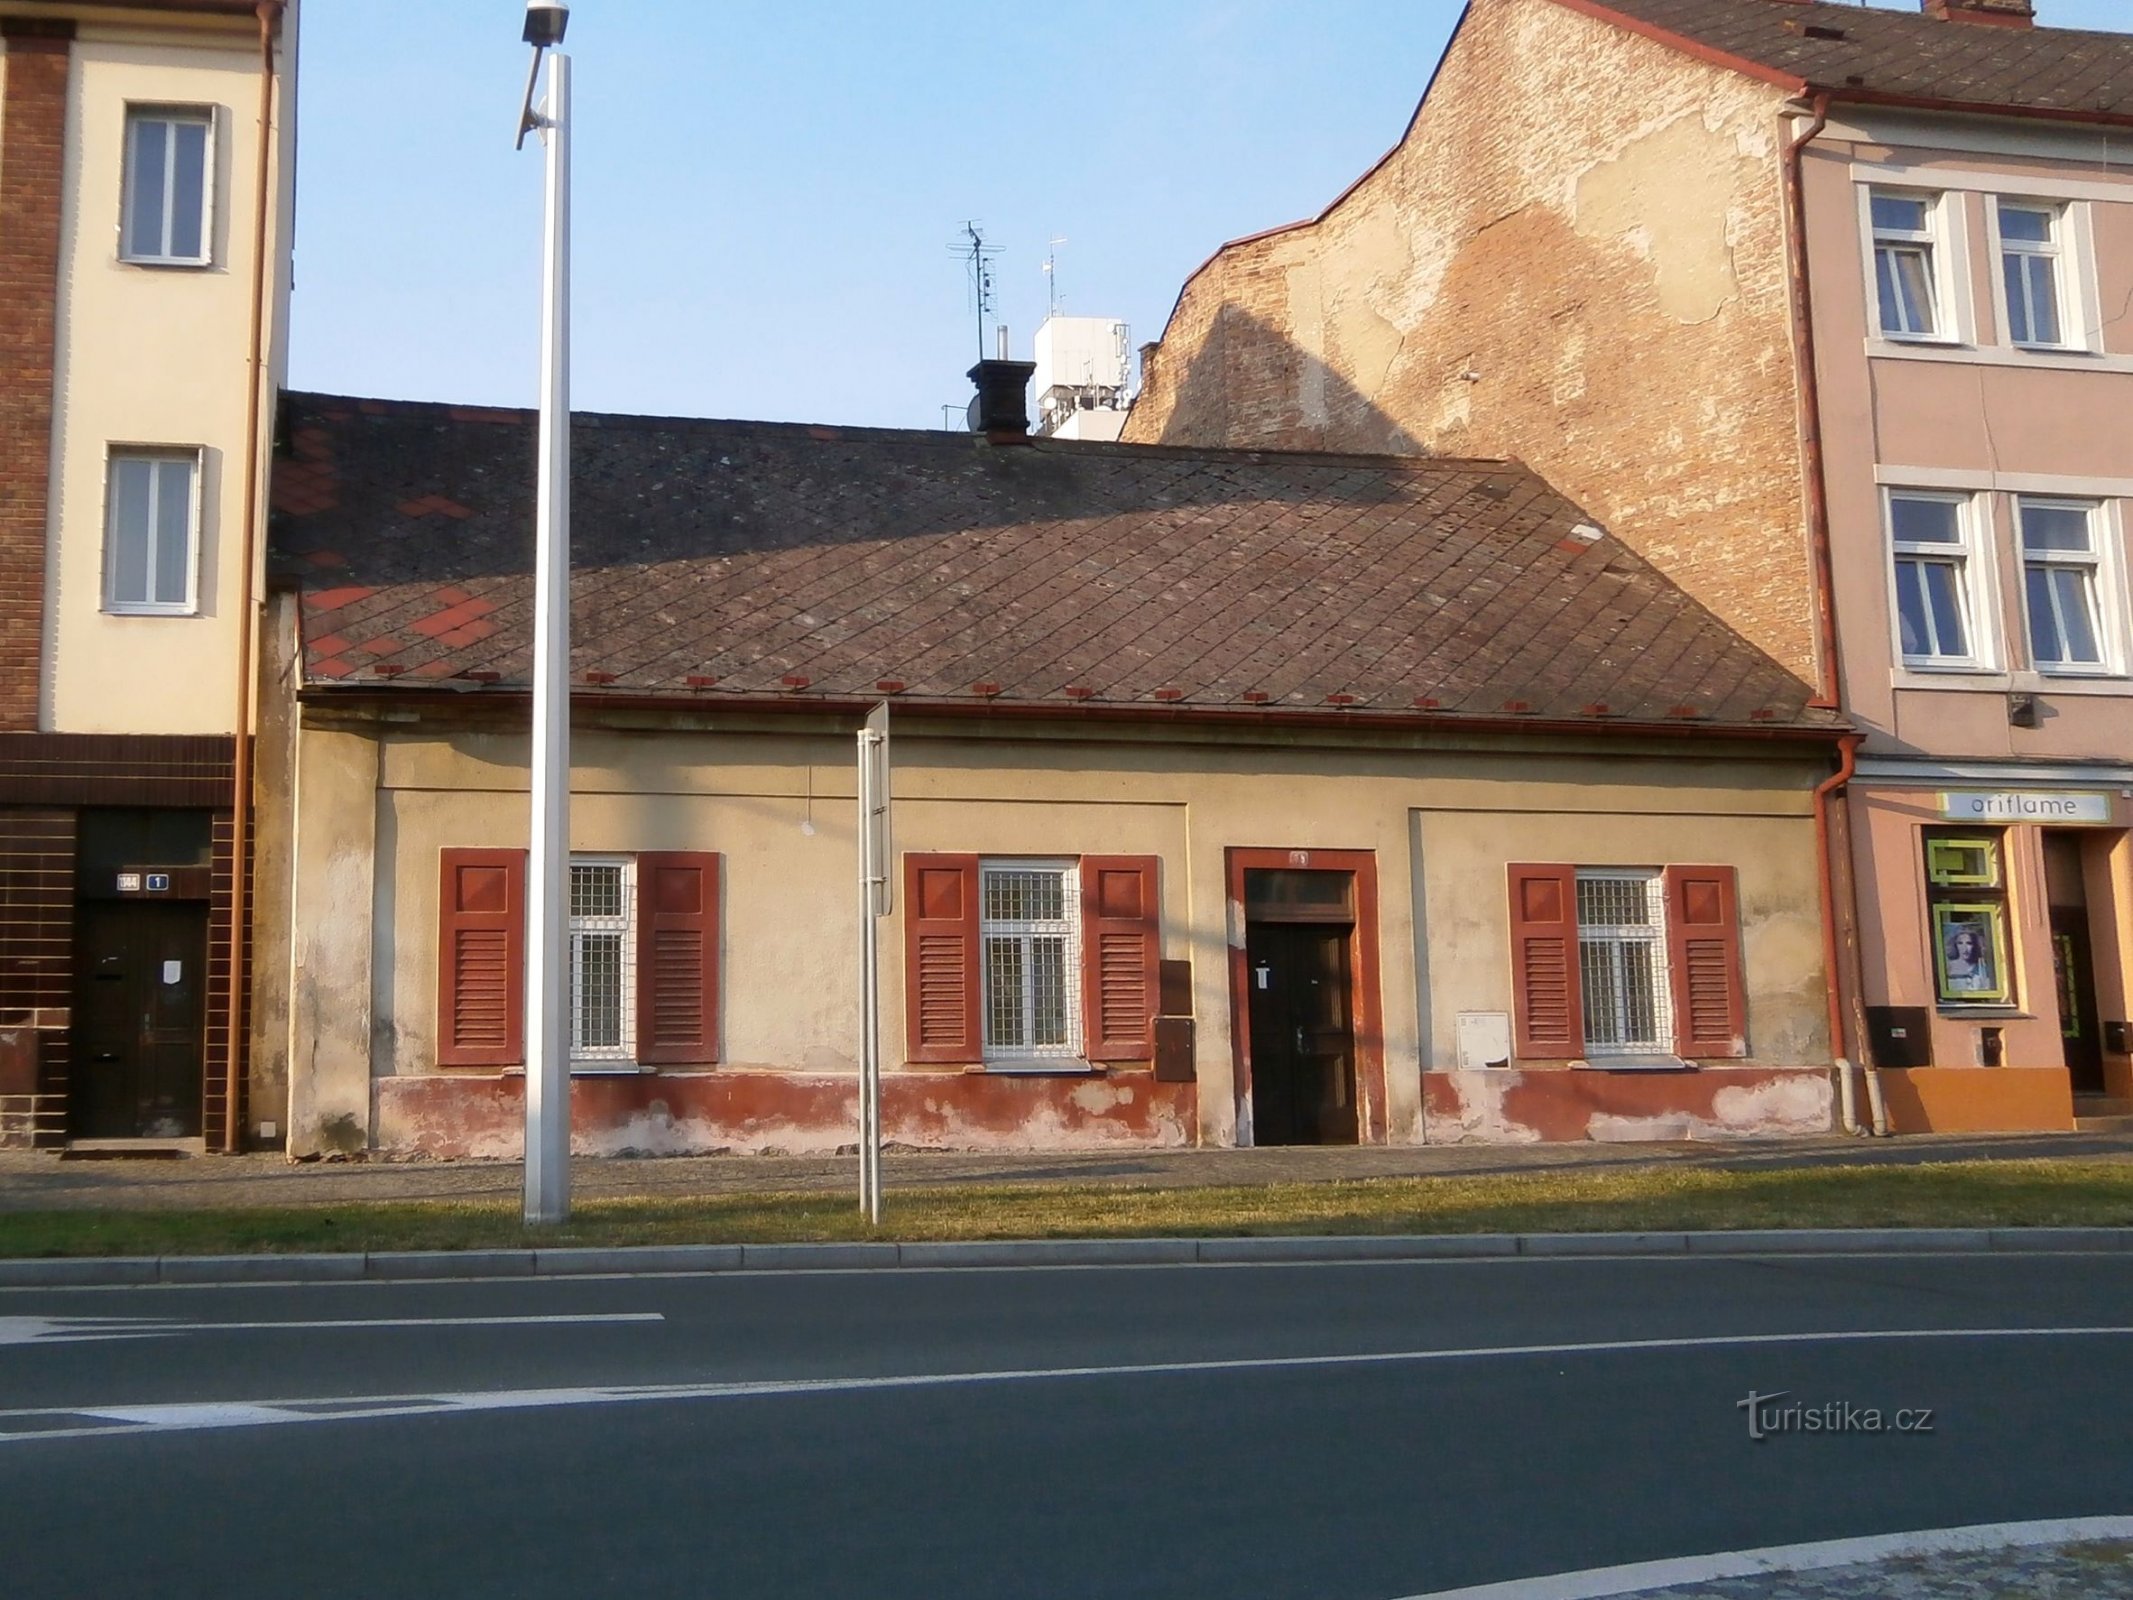 Asema nro 78 (Hradec Králové, 27.7.2014)